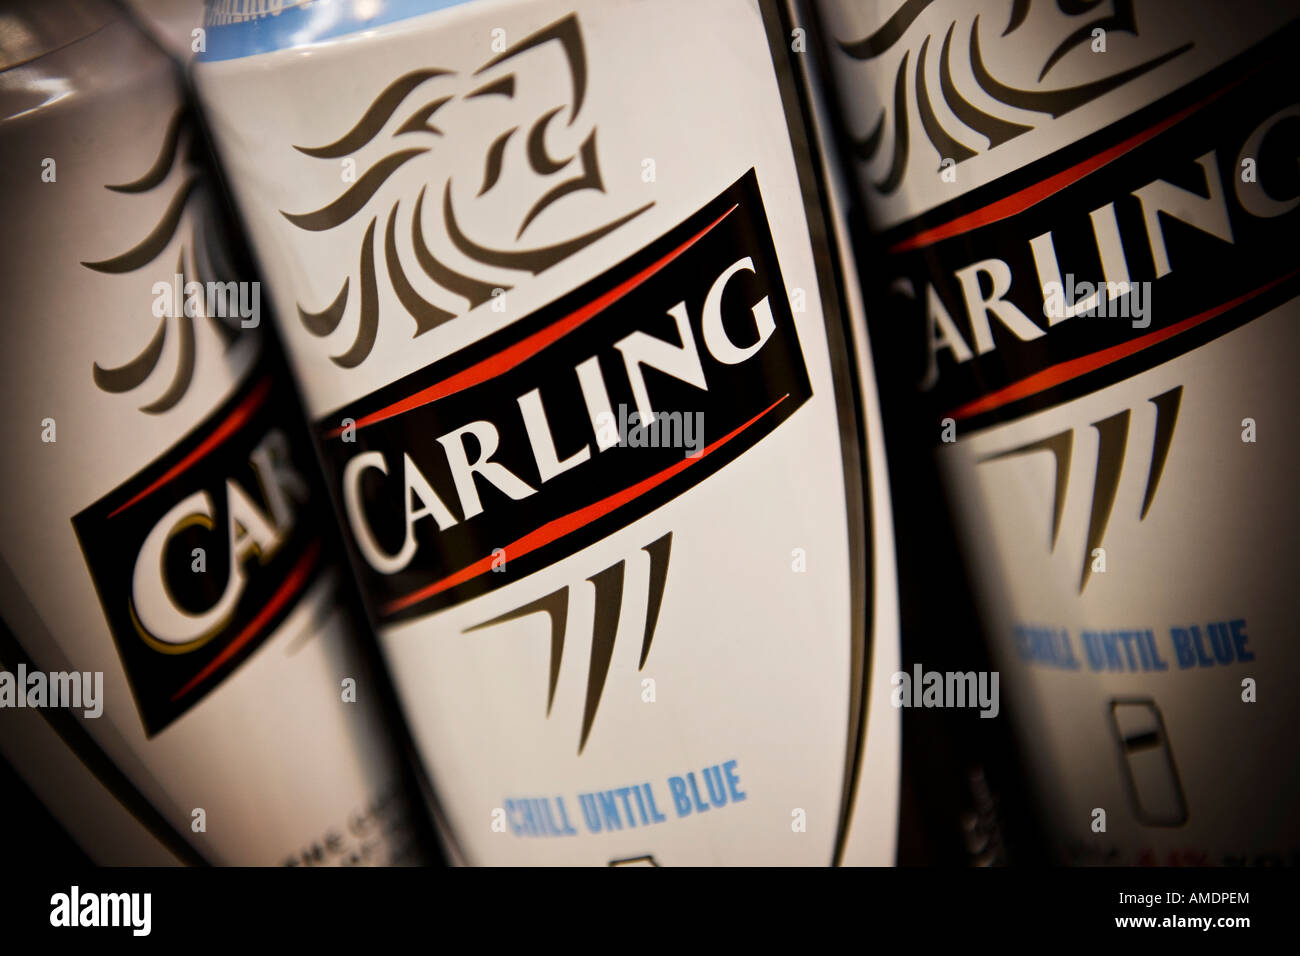 Les canettes de bière Carling Carling est une marque de Molson Coors Brewing Company Banque D'Images